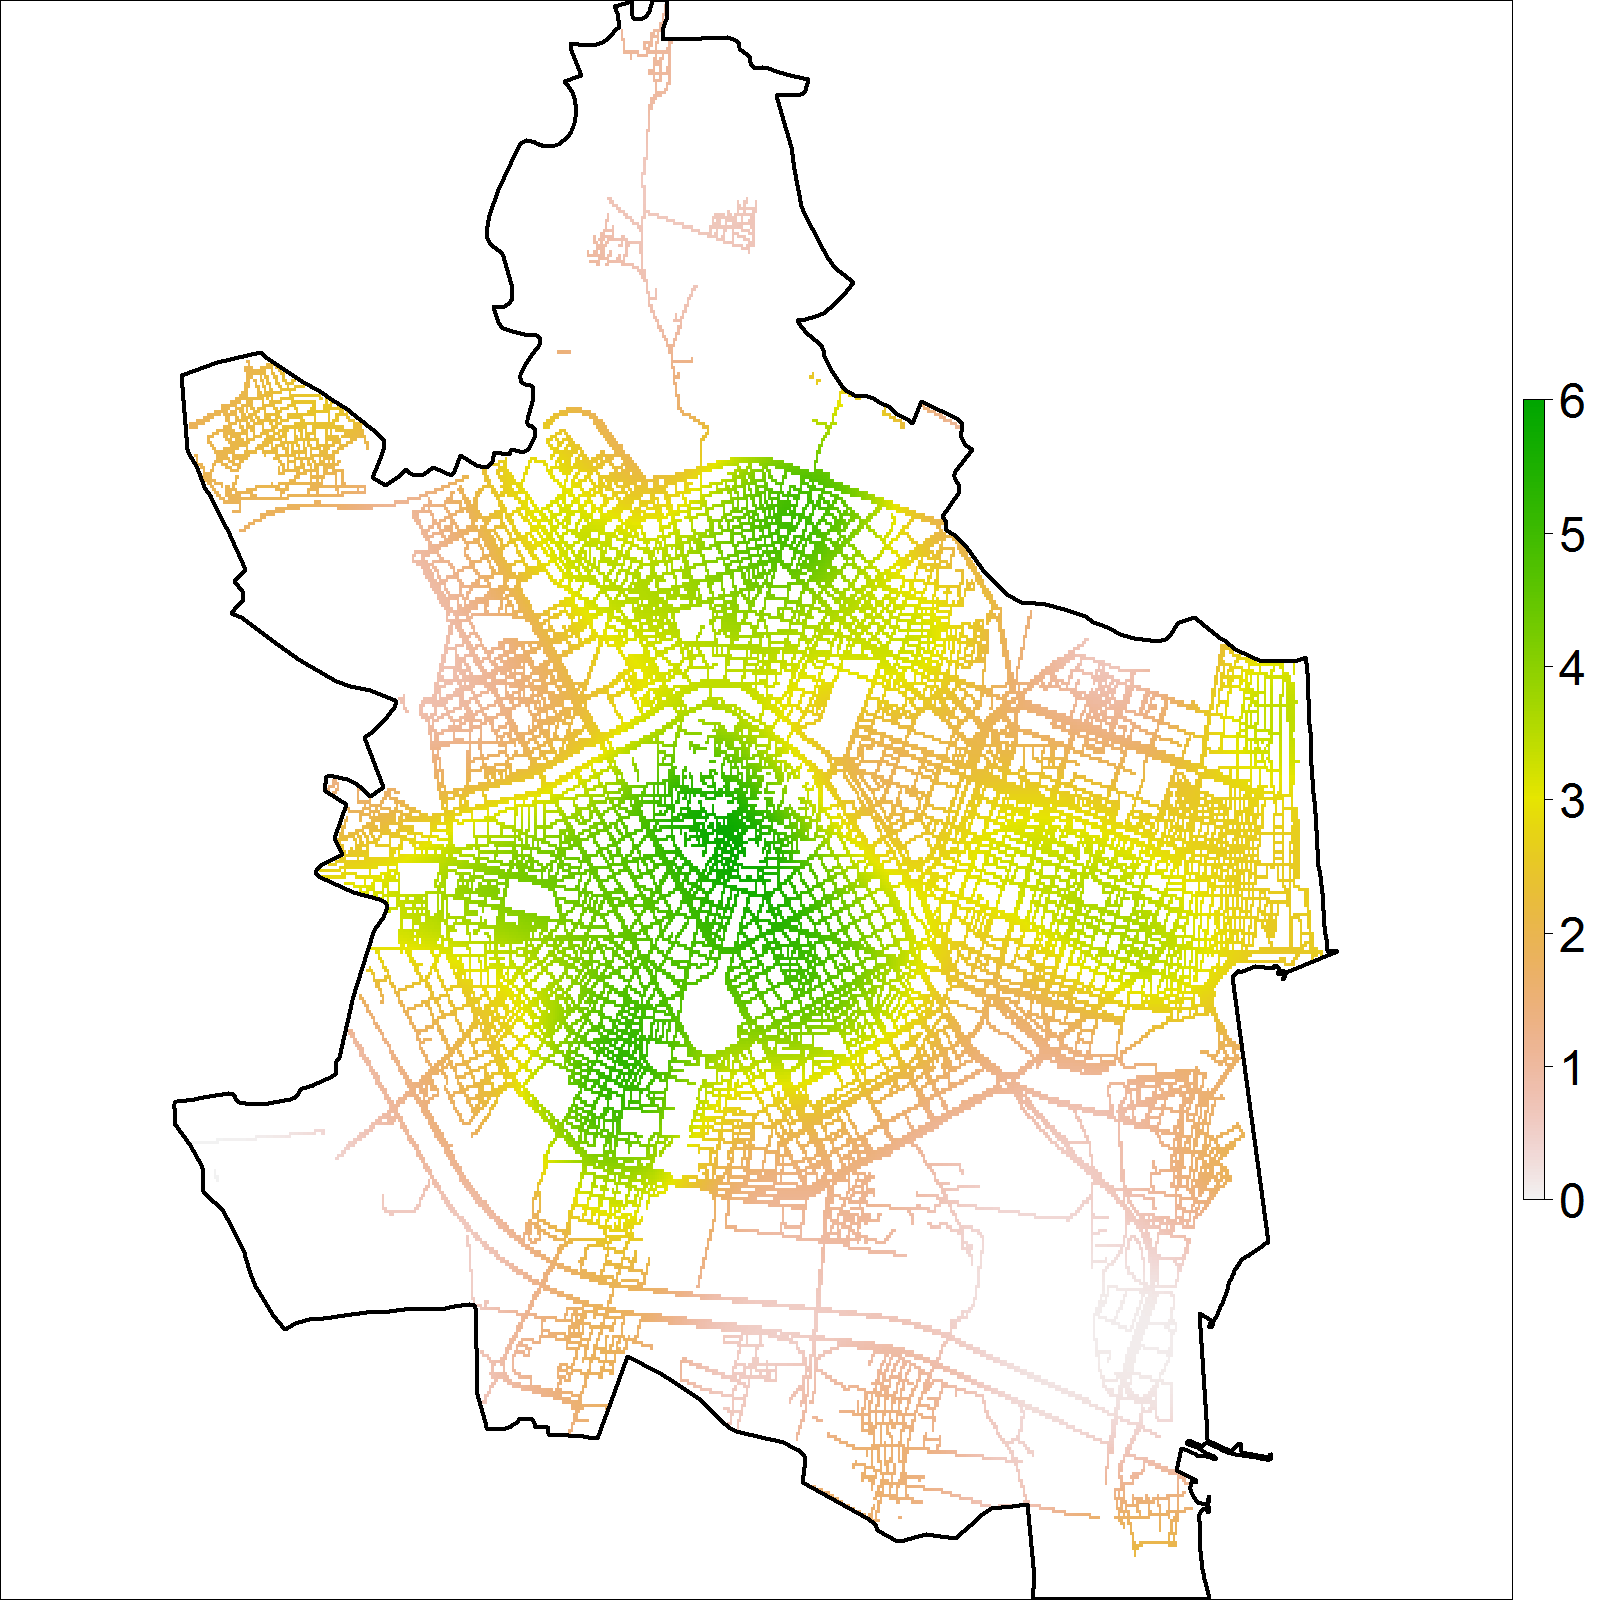 Intensidad estimada por función núcleo, usando el  estimador de borde uniforme corregido (izquierda), para los datos de delitos (puntos rojos) en Valencia durante 2020 (derecha). Los valores de intensidad muestran el número de crímenes por km lineal.